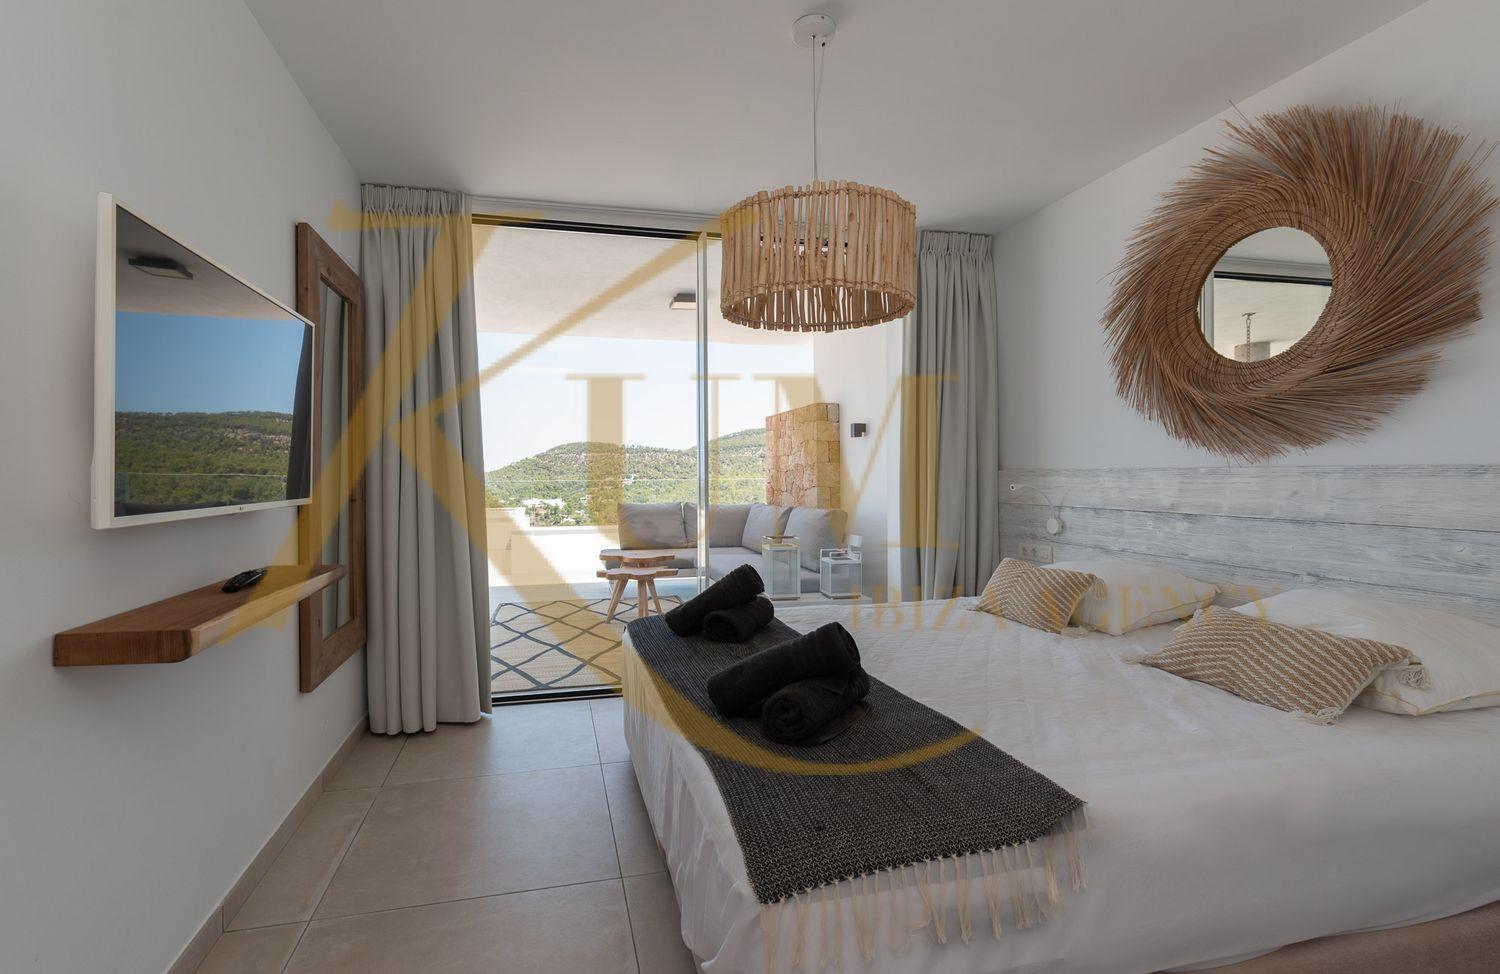 Apartament idíl·lic amb vistes al mar.